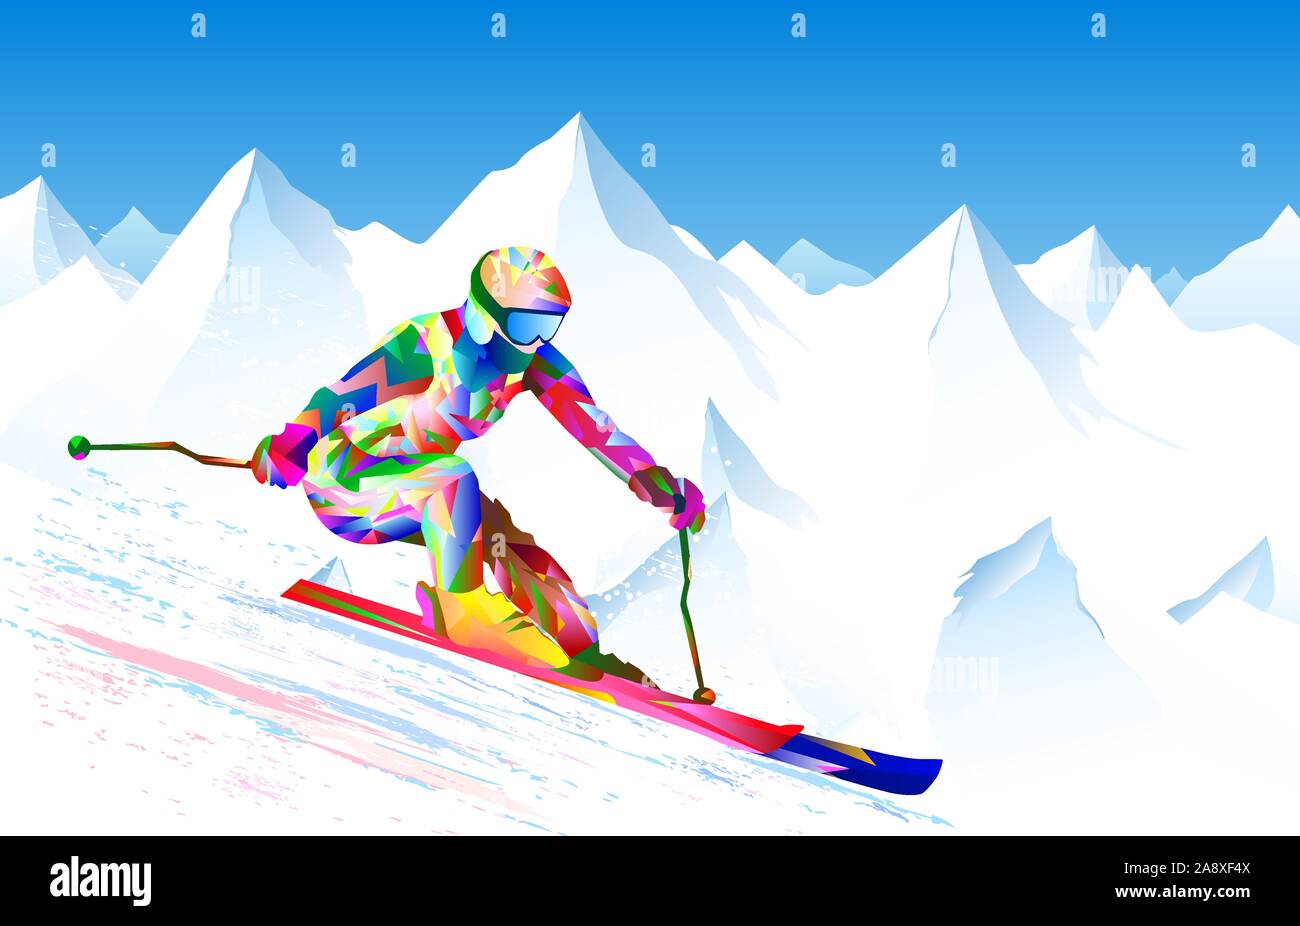 La skieuse de l'athlète sur un fond de ciel et sommets enneigés. L'athlète est actif en ski de descente et de slalom, effectue. Couleur lumineuse figure-silhouette Illustration de Vecteur